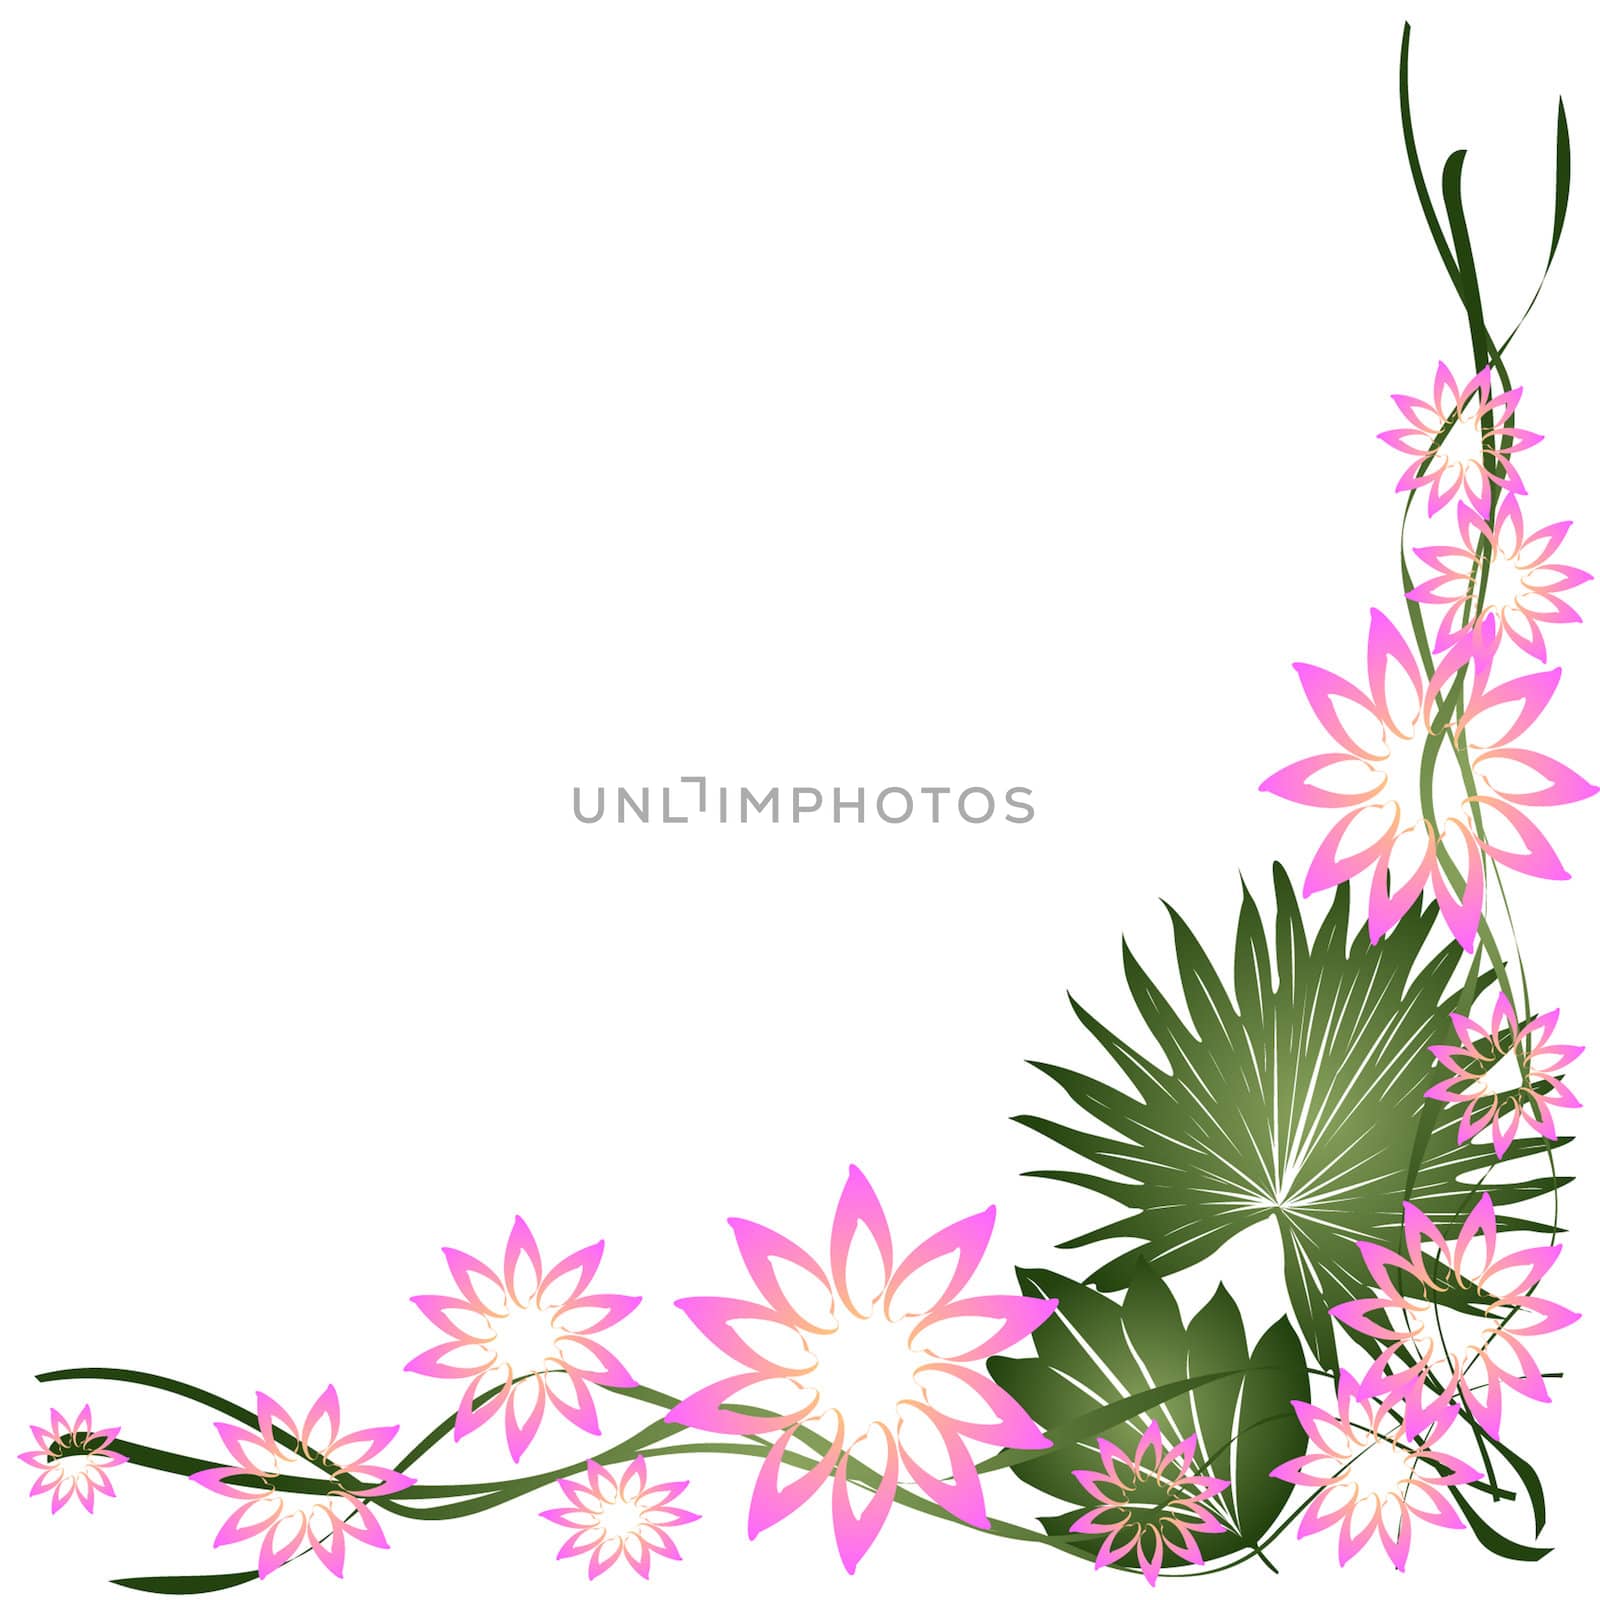 Floral frame, border on white background